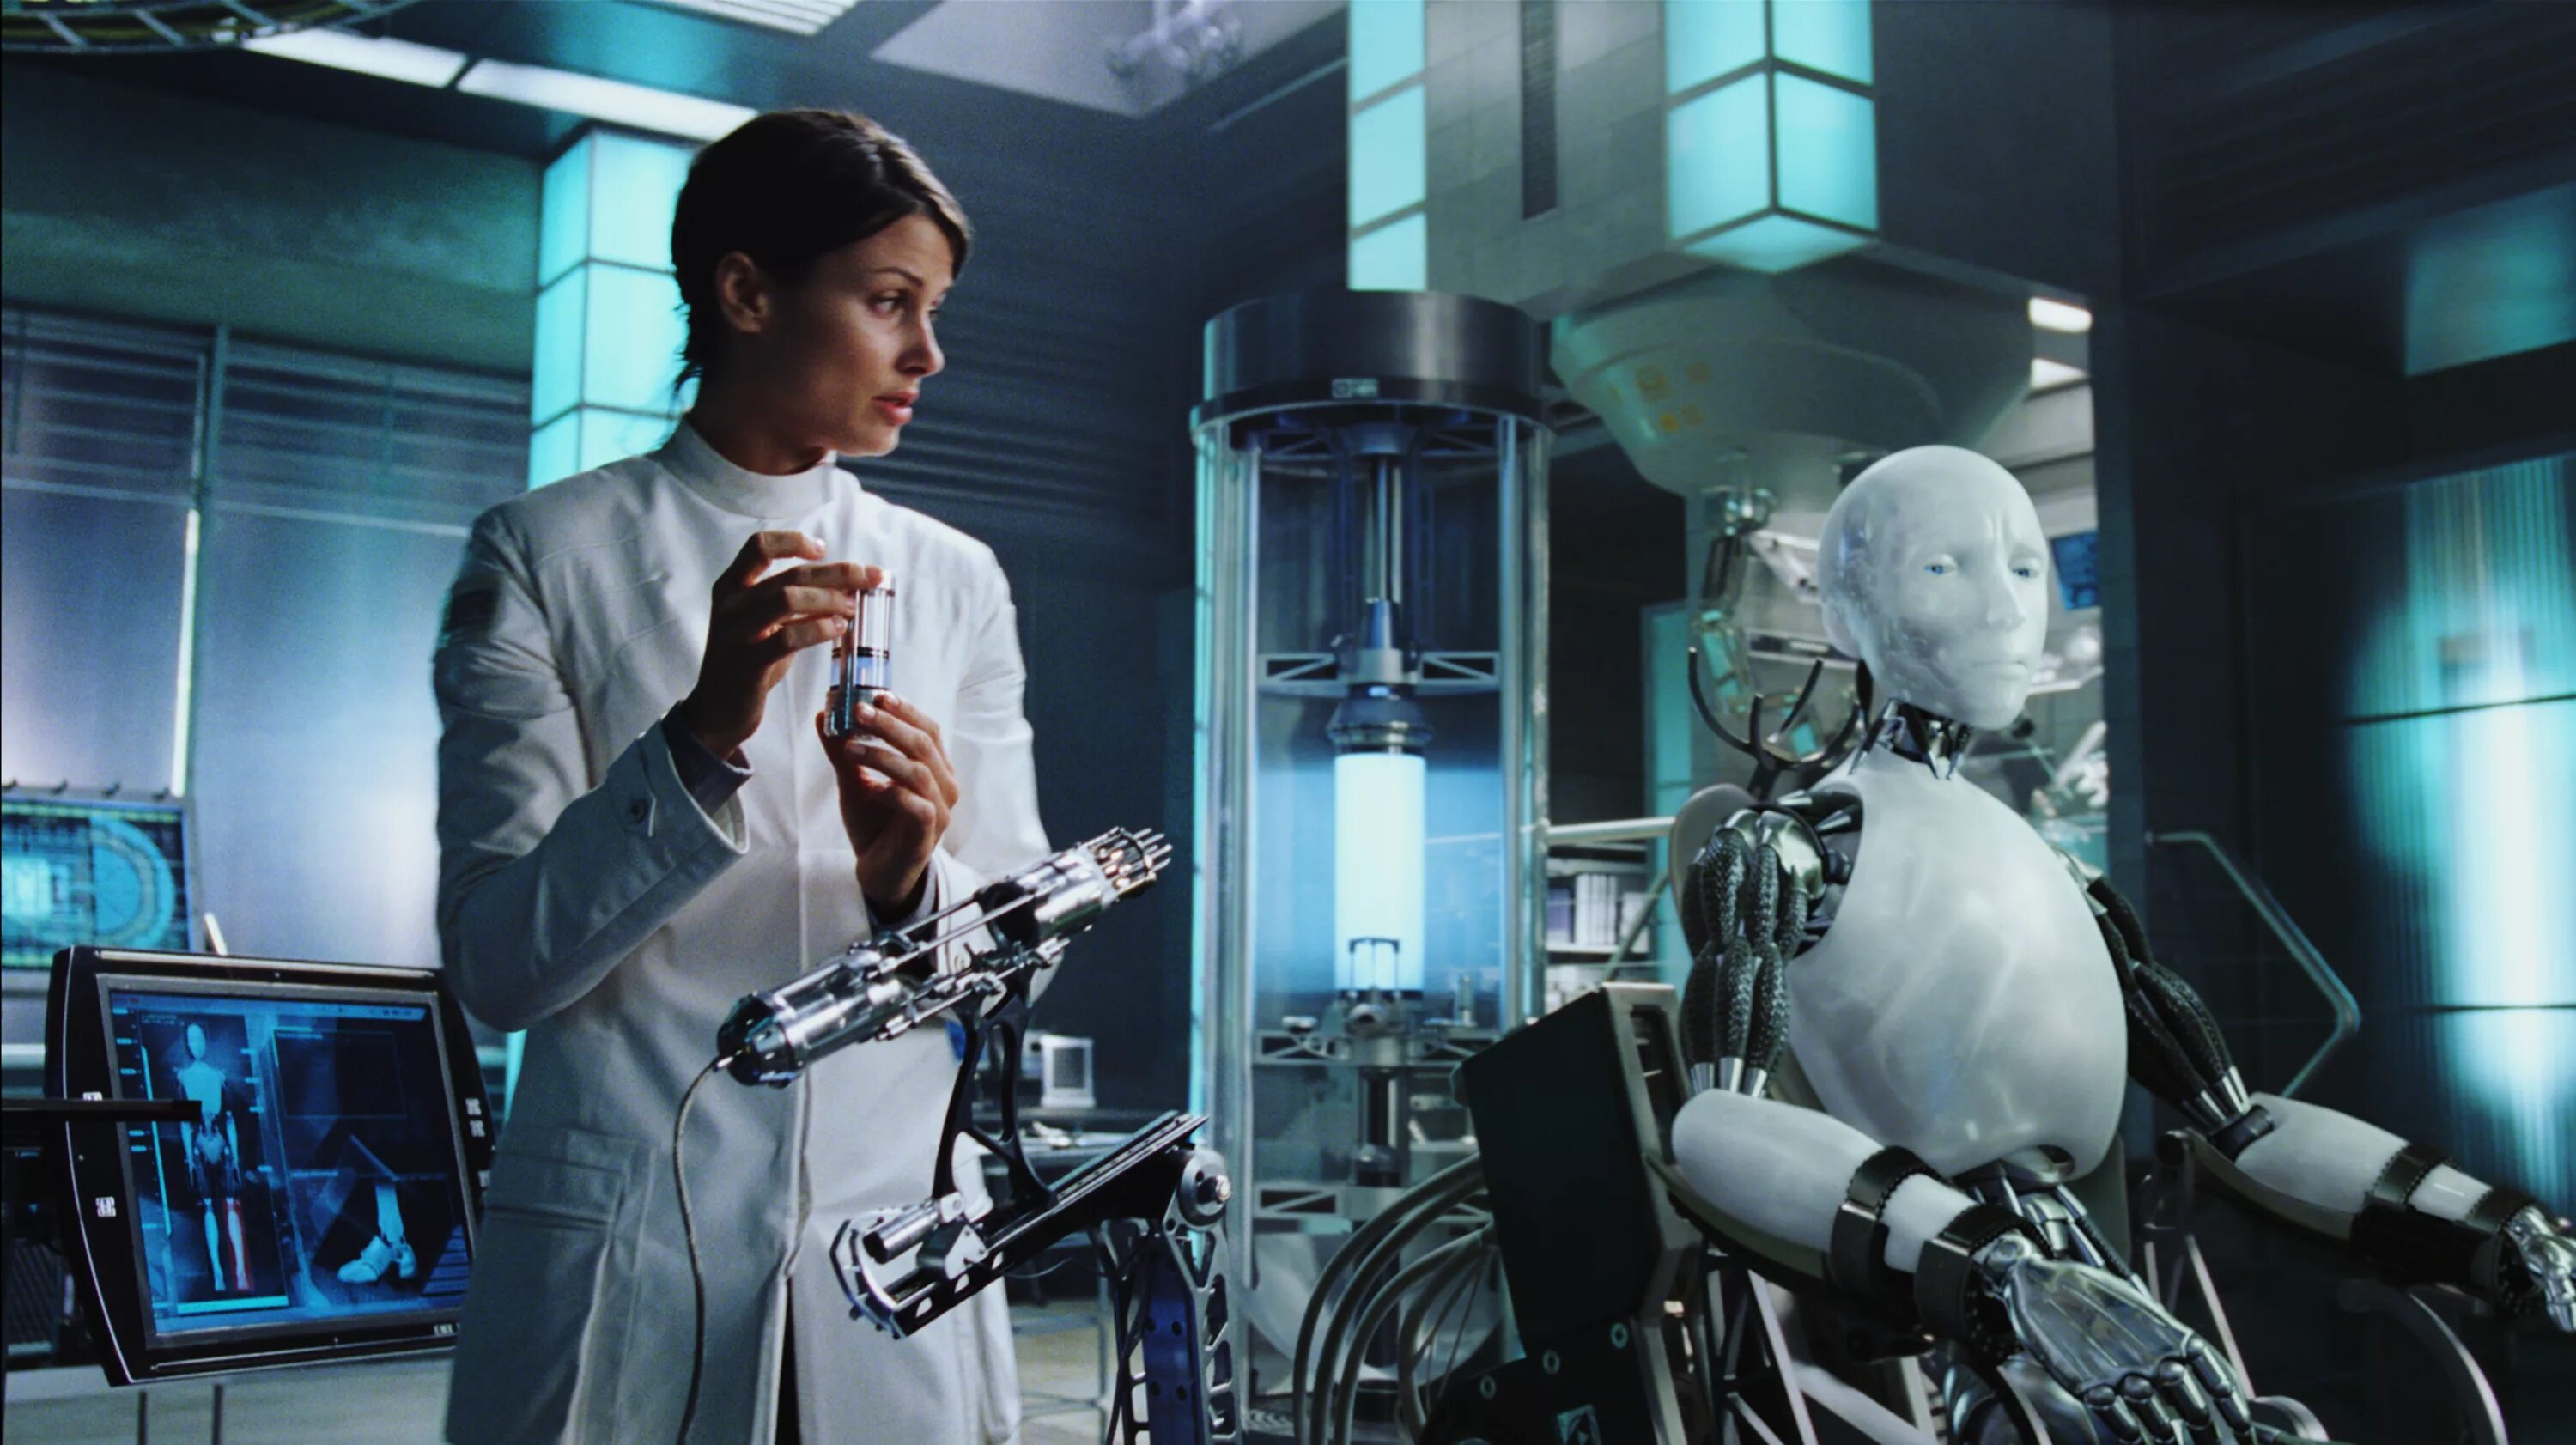 Информация про роботов. Уилл Смит и робот.